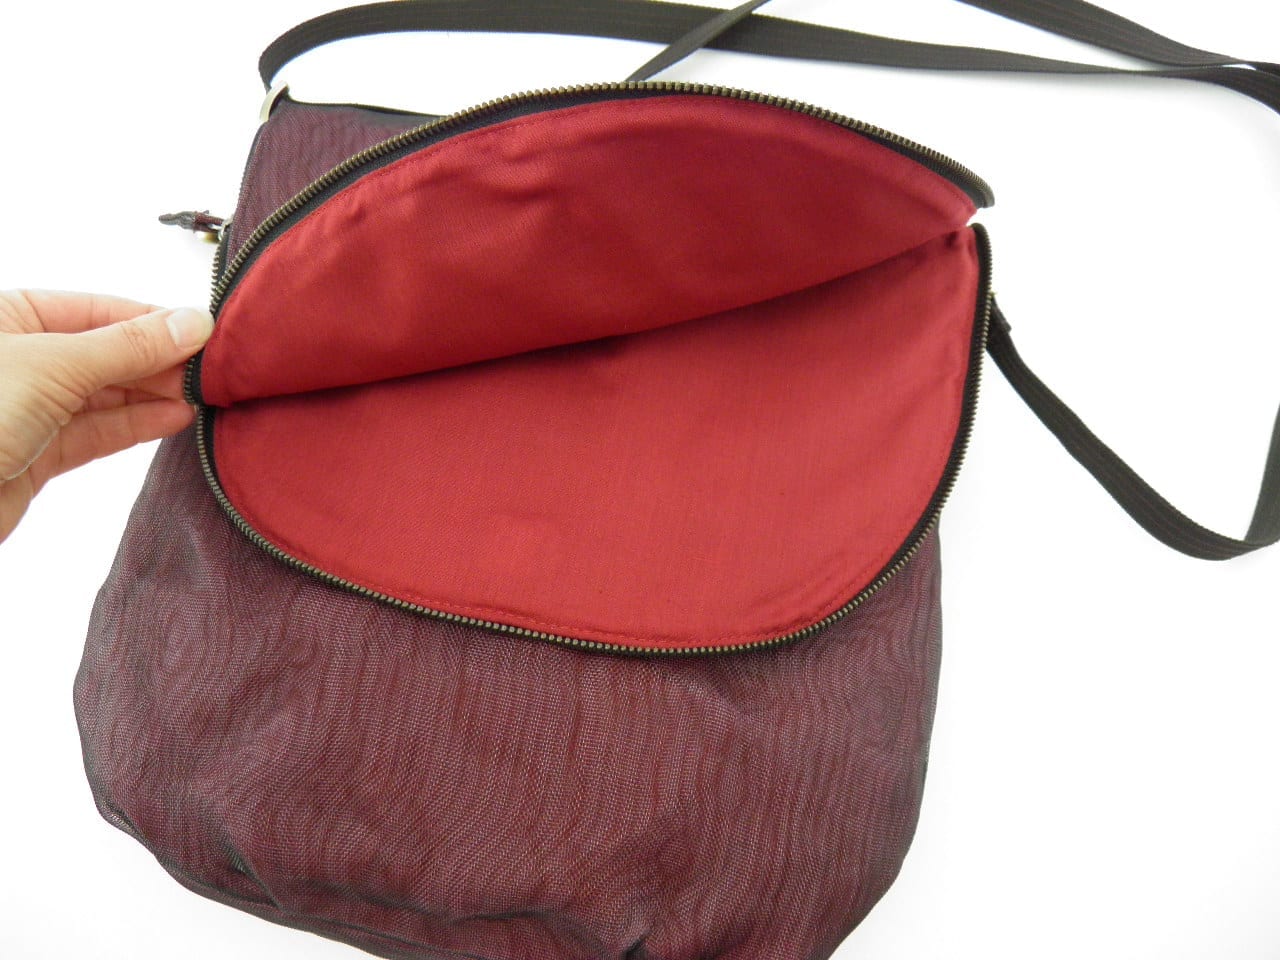 Break - Ethical shoulder bag - detail